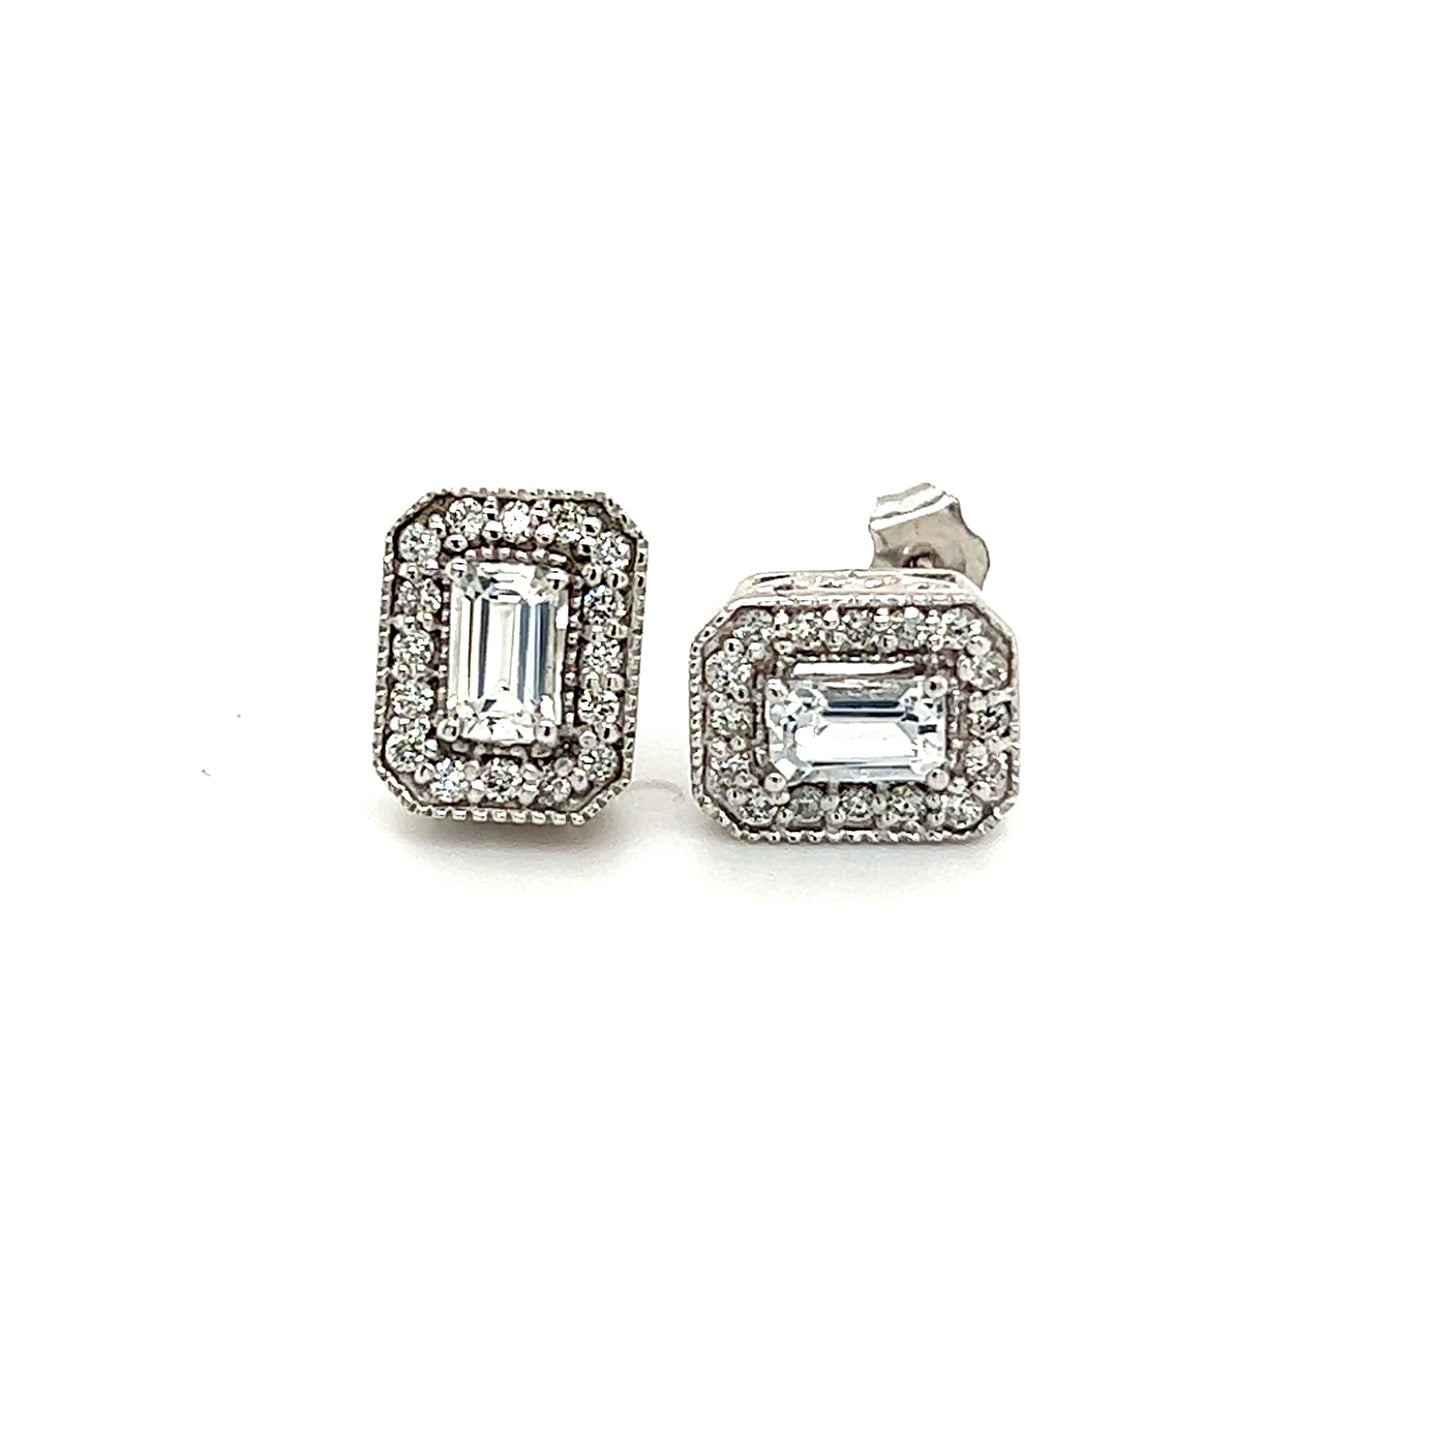 Natural Sapphire Diamond Stud Earrings 14k W Gold 0.96 TCW Certified $2950 121269 - Certified Fine Jewelry